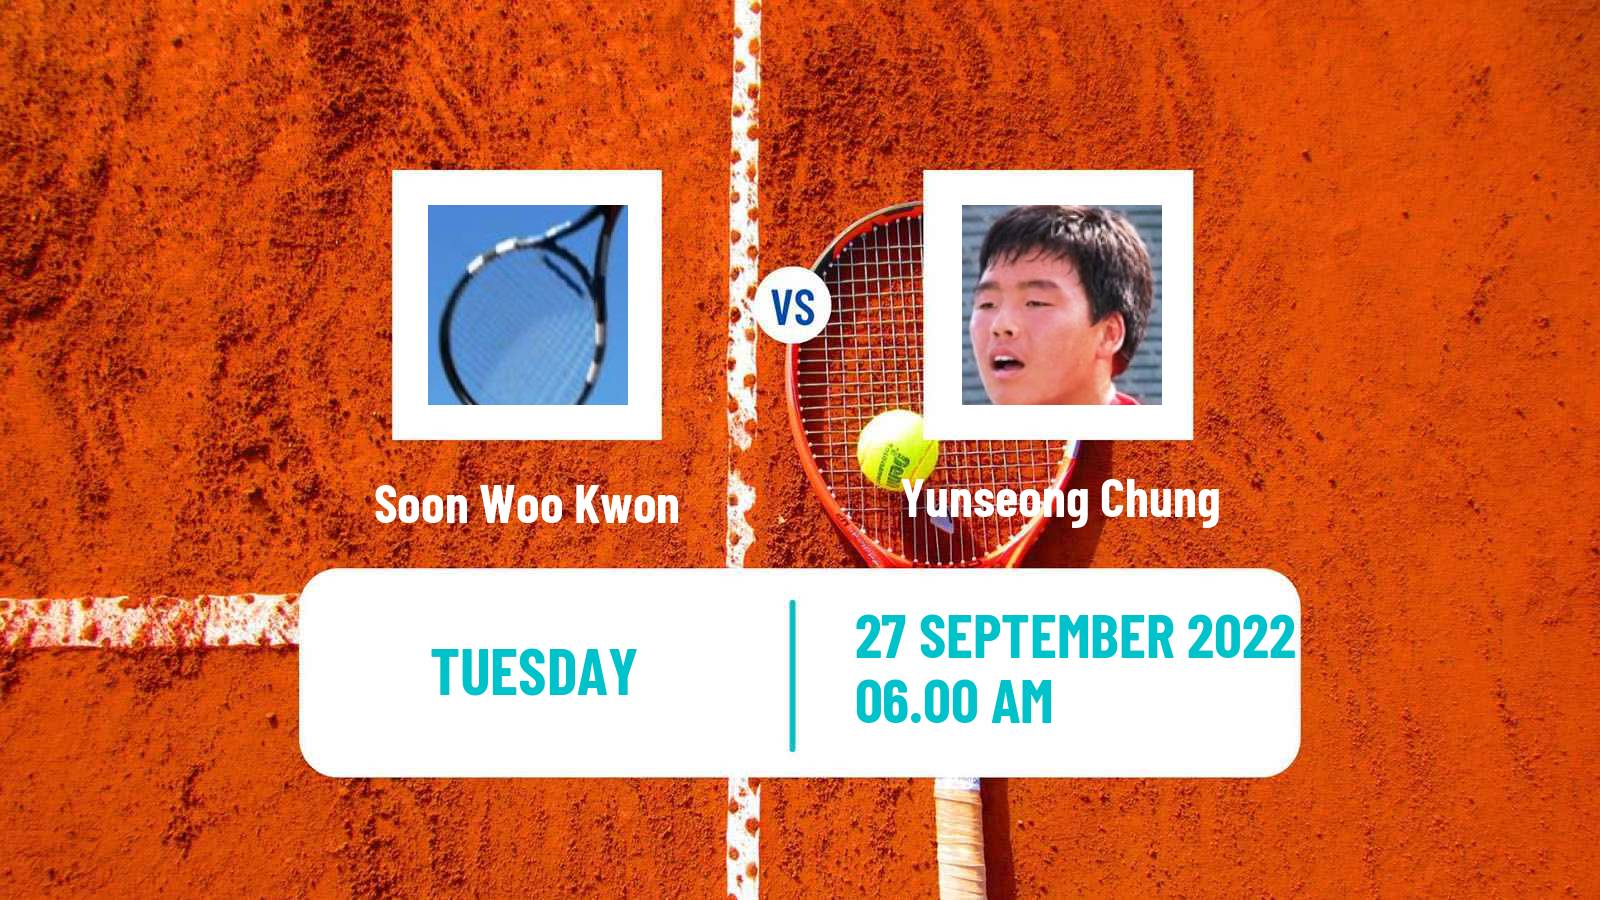 Tennis ATP Seoul Soon Woo Kwon - Yunseong Chung